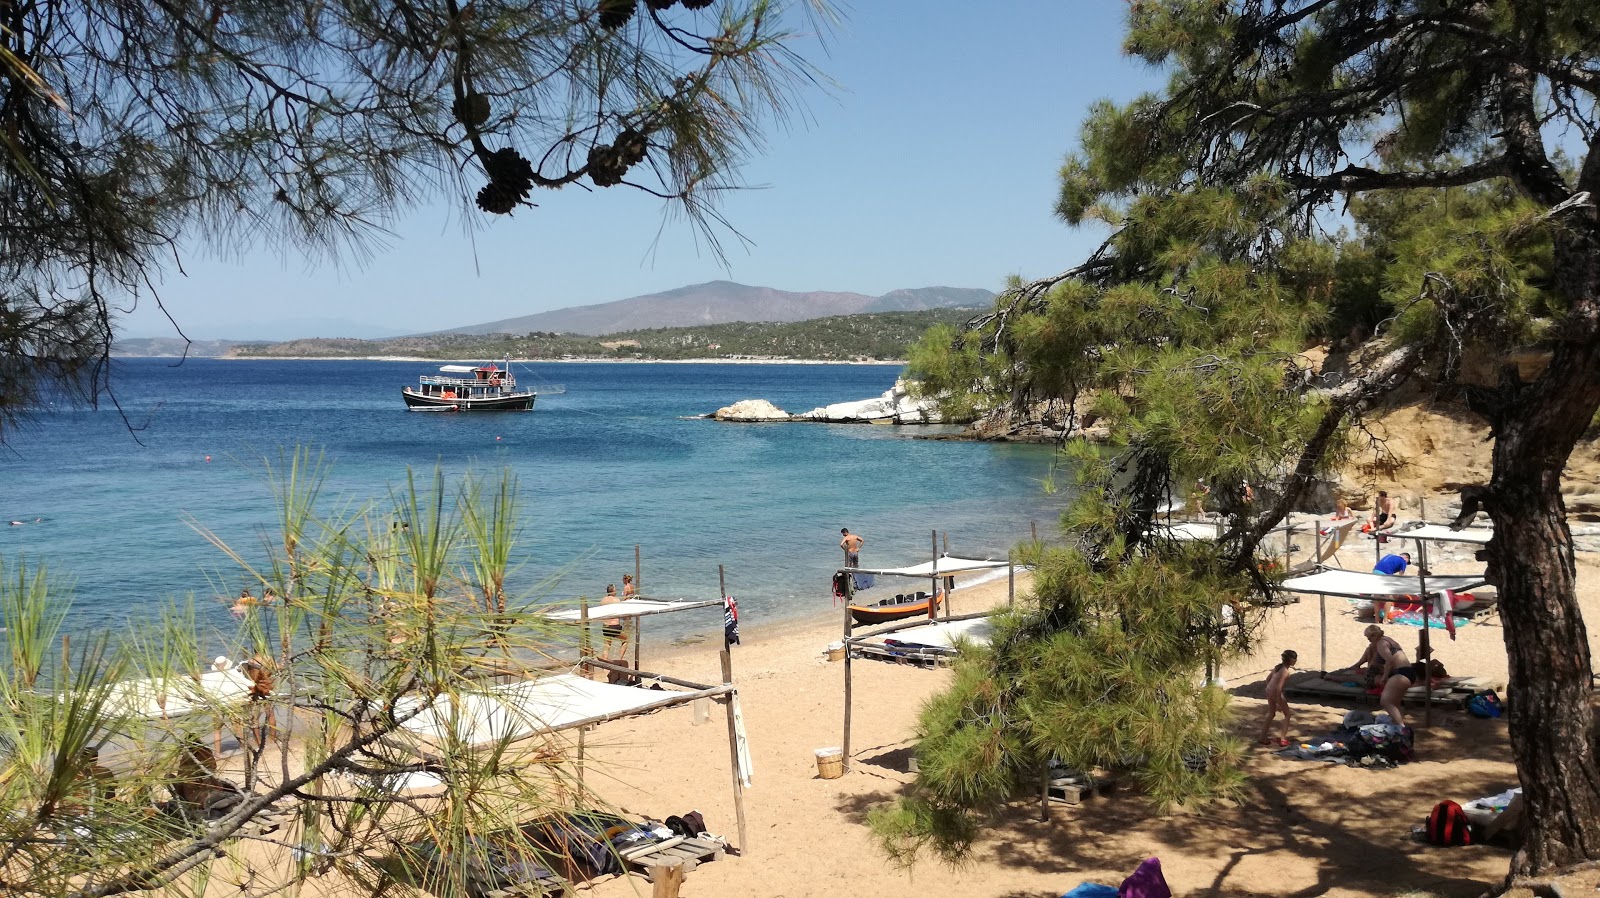 Foto di Salonikios beach ubicato in zona naturale